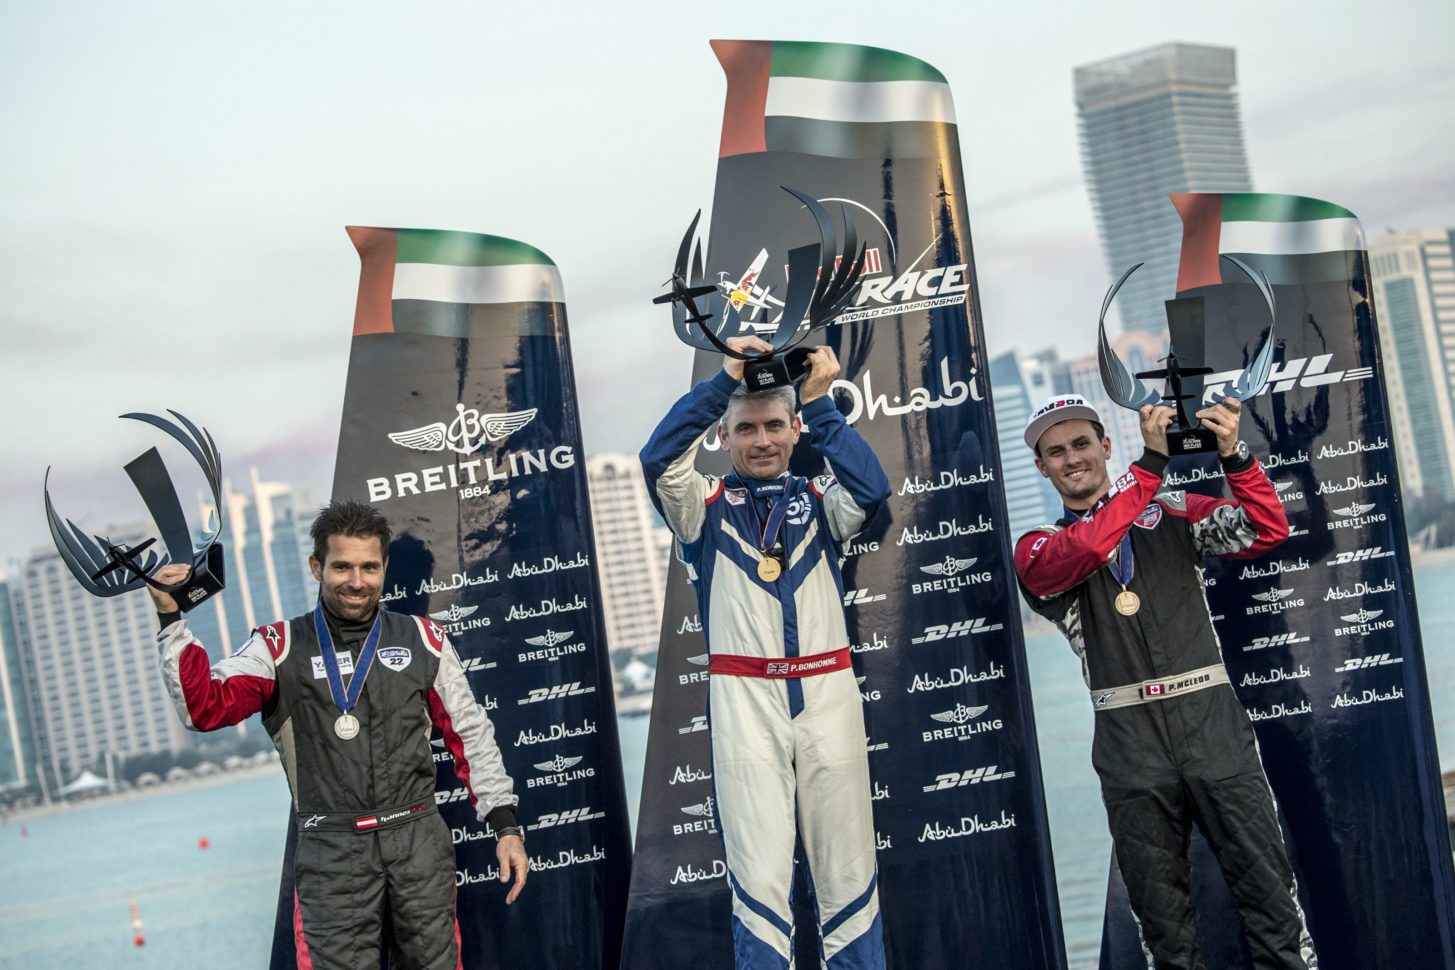 Hannes Archof/Österreich (links), Paul Bonhomme/Großbritannien (Mitte) und Pete McLeod/Kanada (rechts) feiern Ihren Sieg der ersten Etappe des Red Bull Air Race 2014 in Abu Dhabi